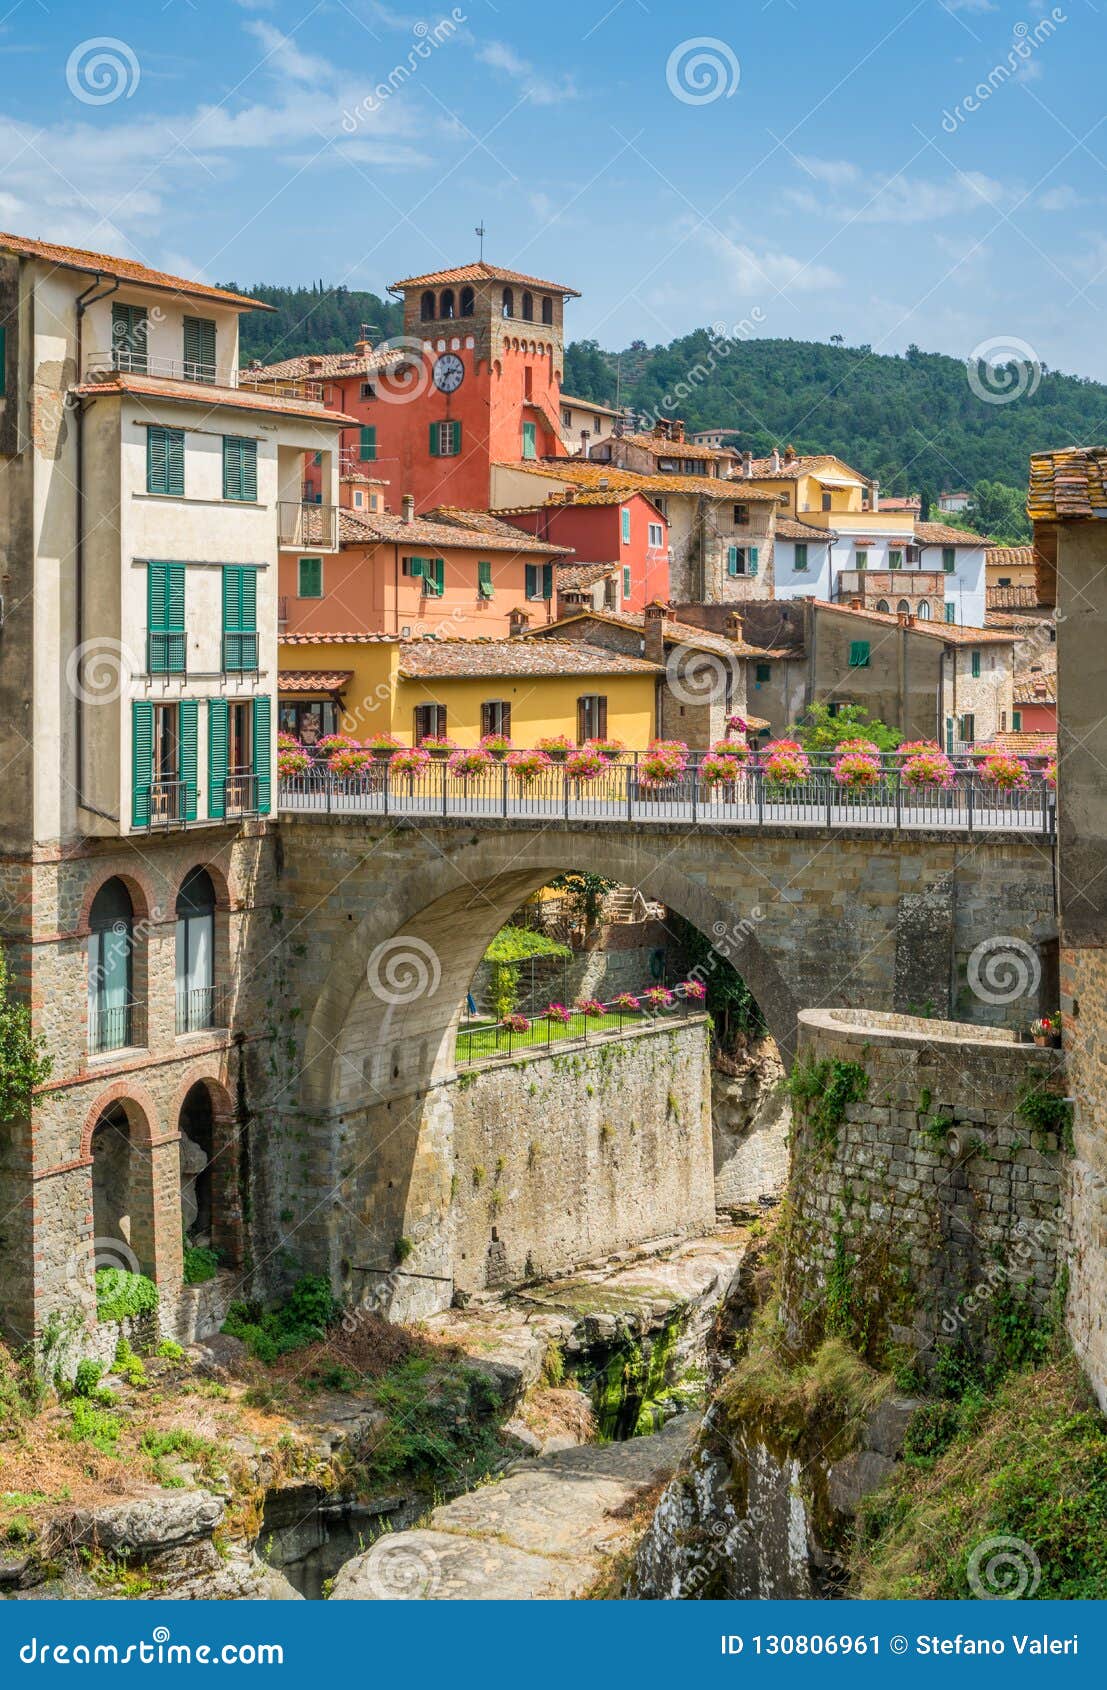 loro ciuffenna, village in the province of arezzo in the italian region tuscany. central italy.